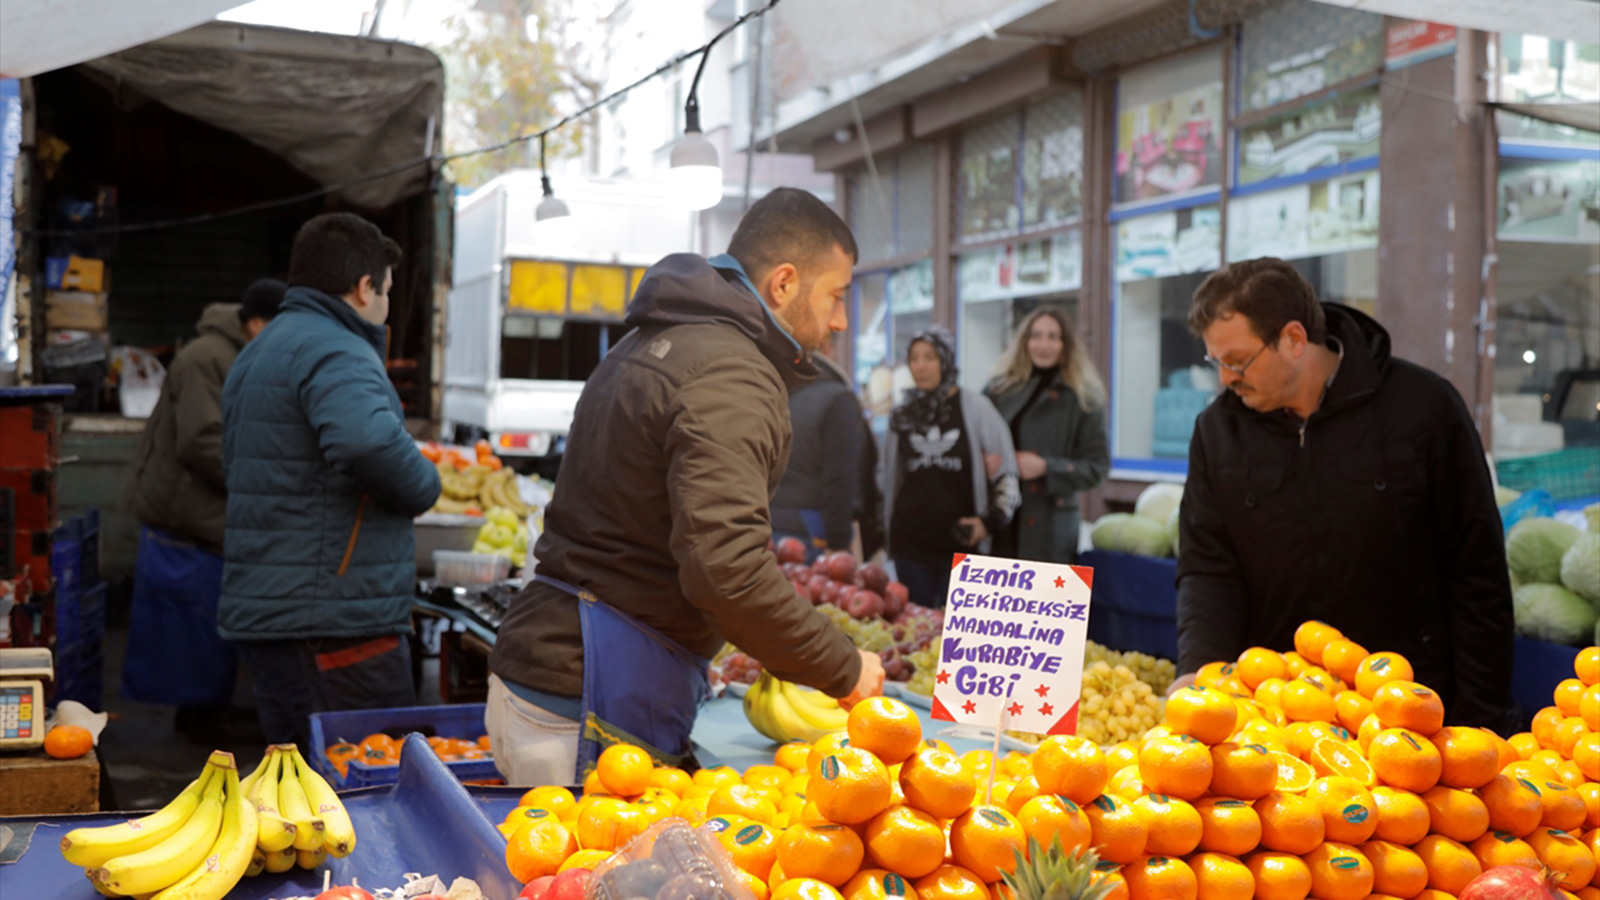 الخضروات والفواكه تميز أسواق البازار في إسطنبول  (الأناضول)